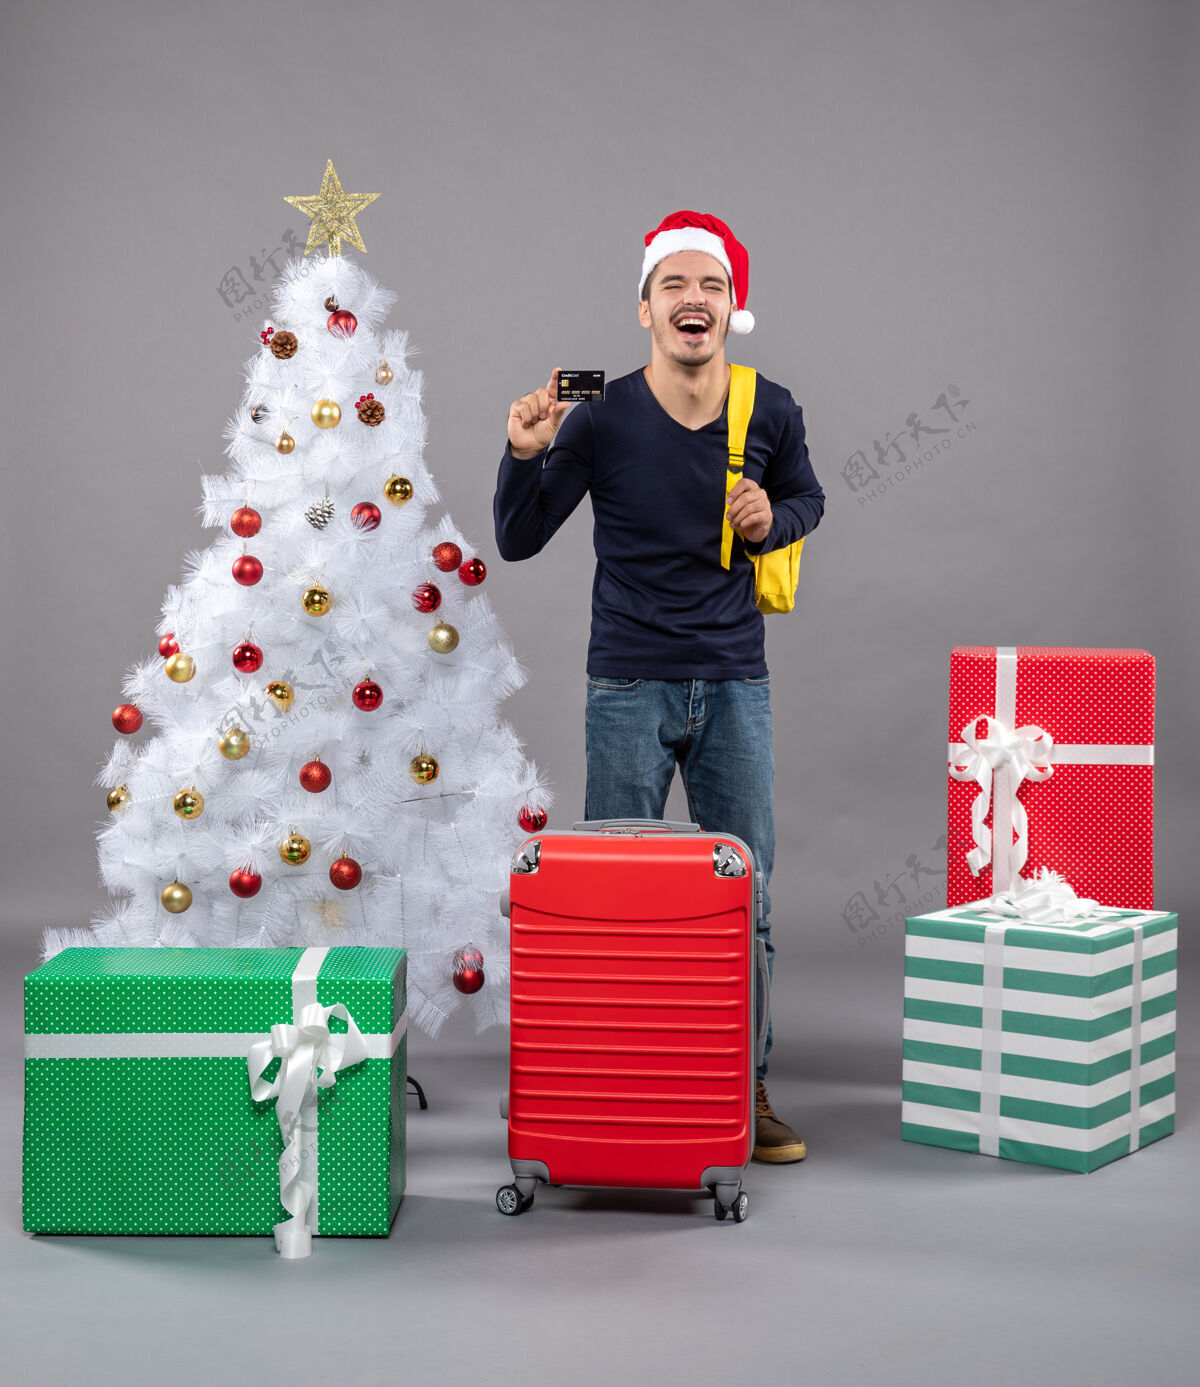 袋子一个拿着卡片的年轻人笑着站在圣诞树旁 孤立无援圣诞树礼物商店